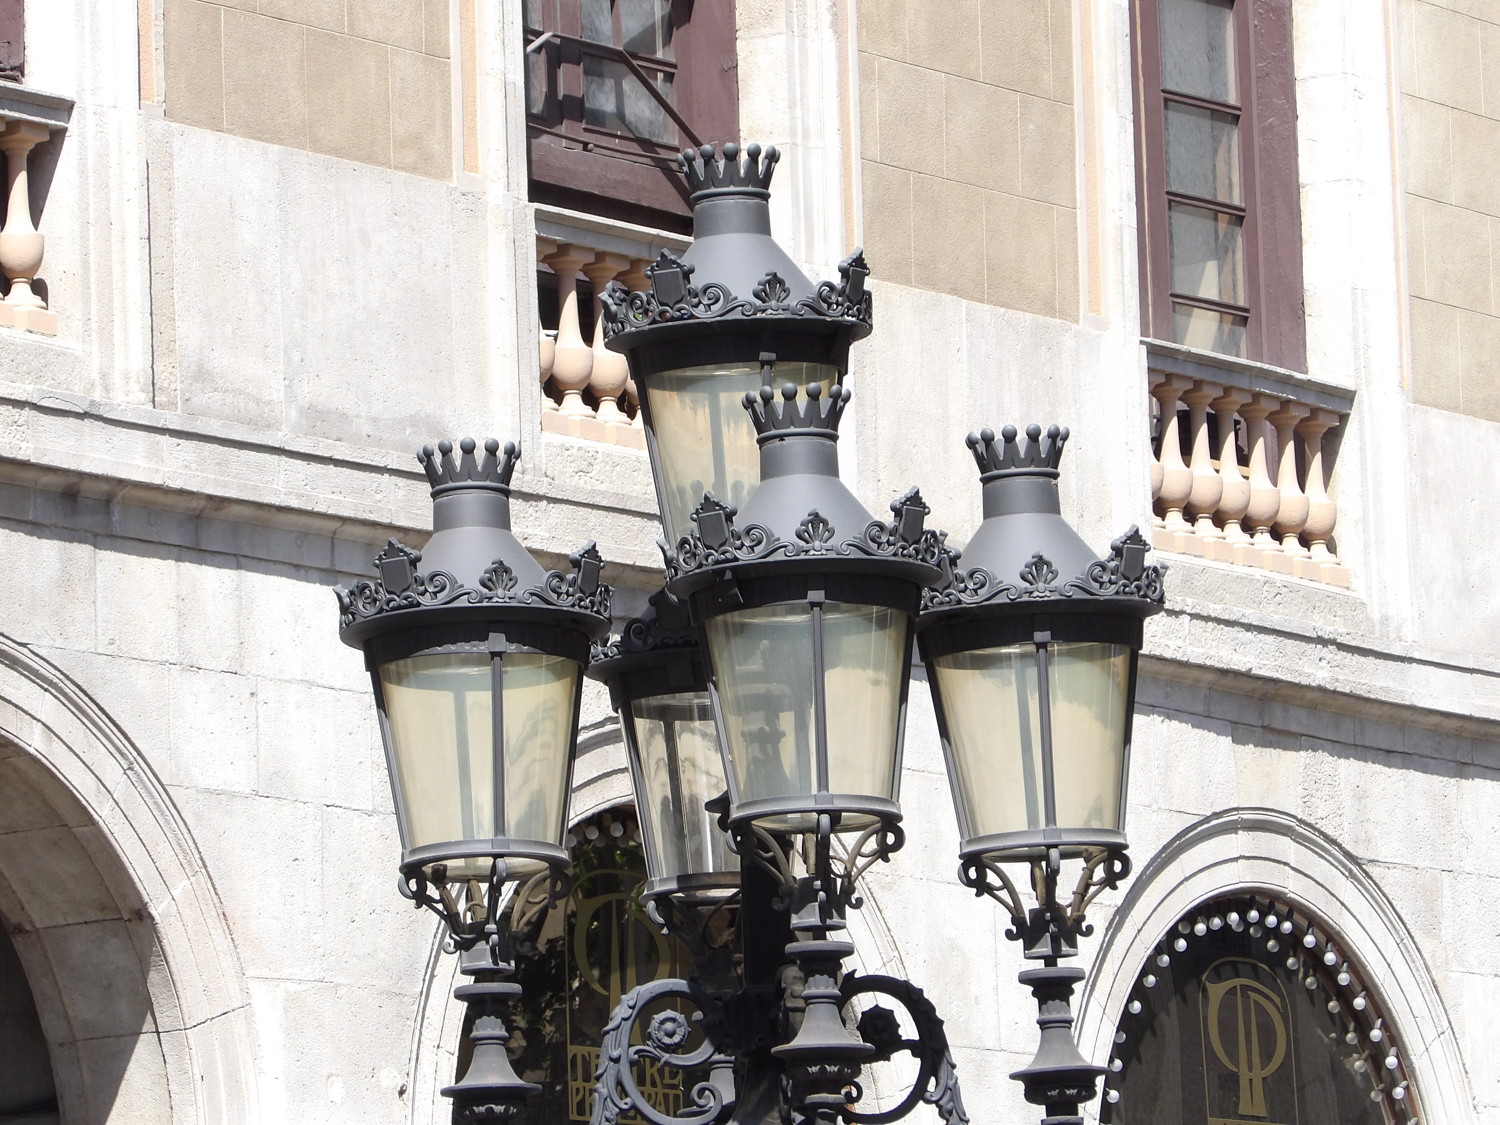 Lamp in Barcelona, Spain.  